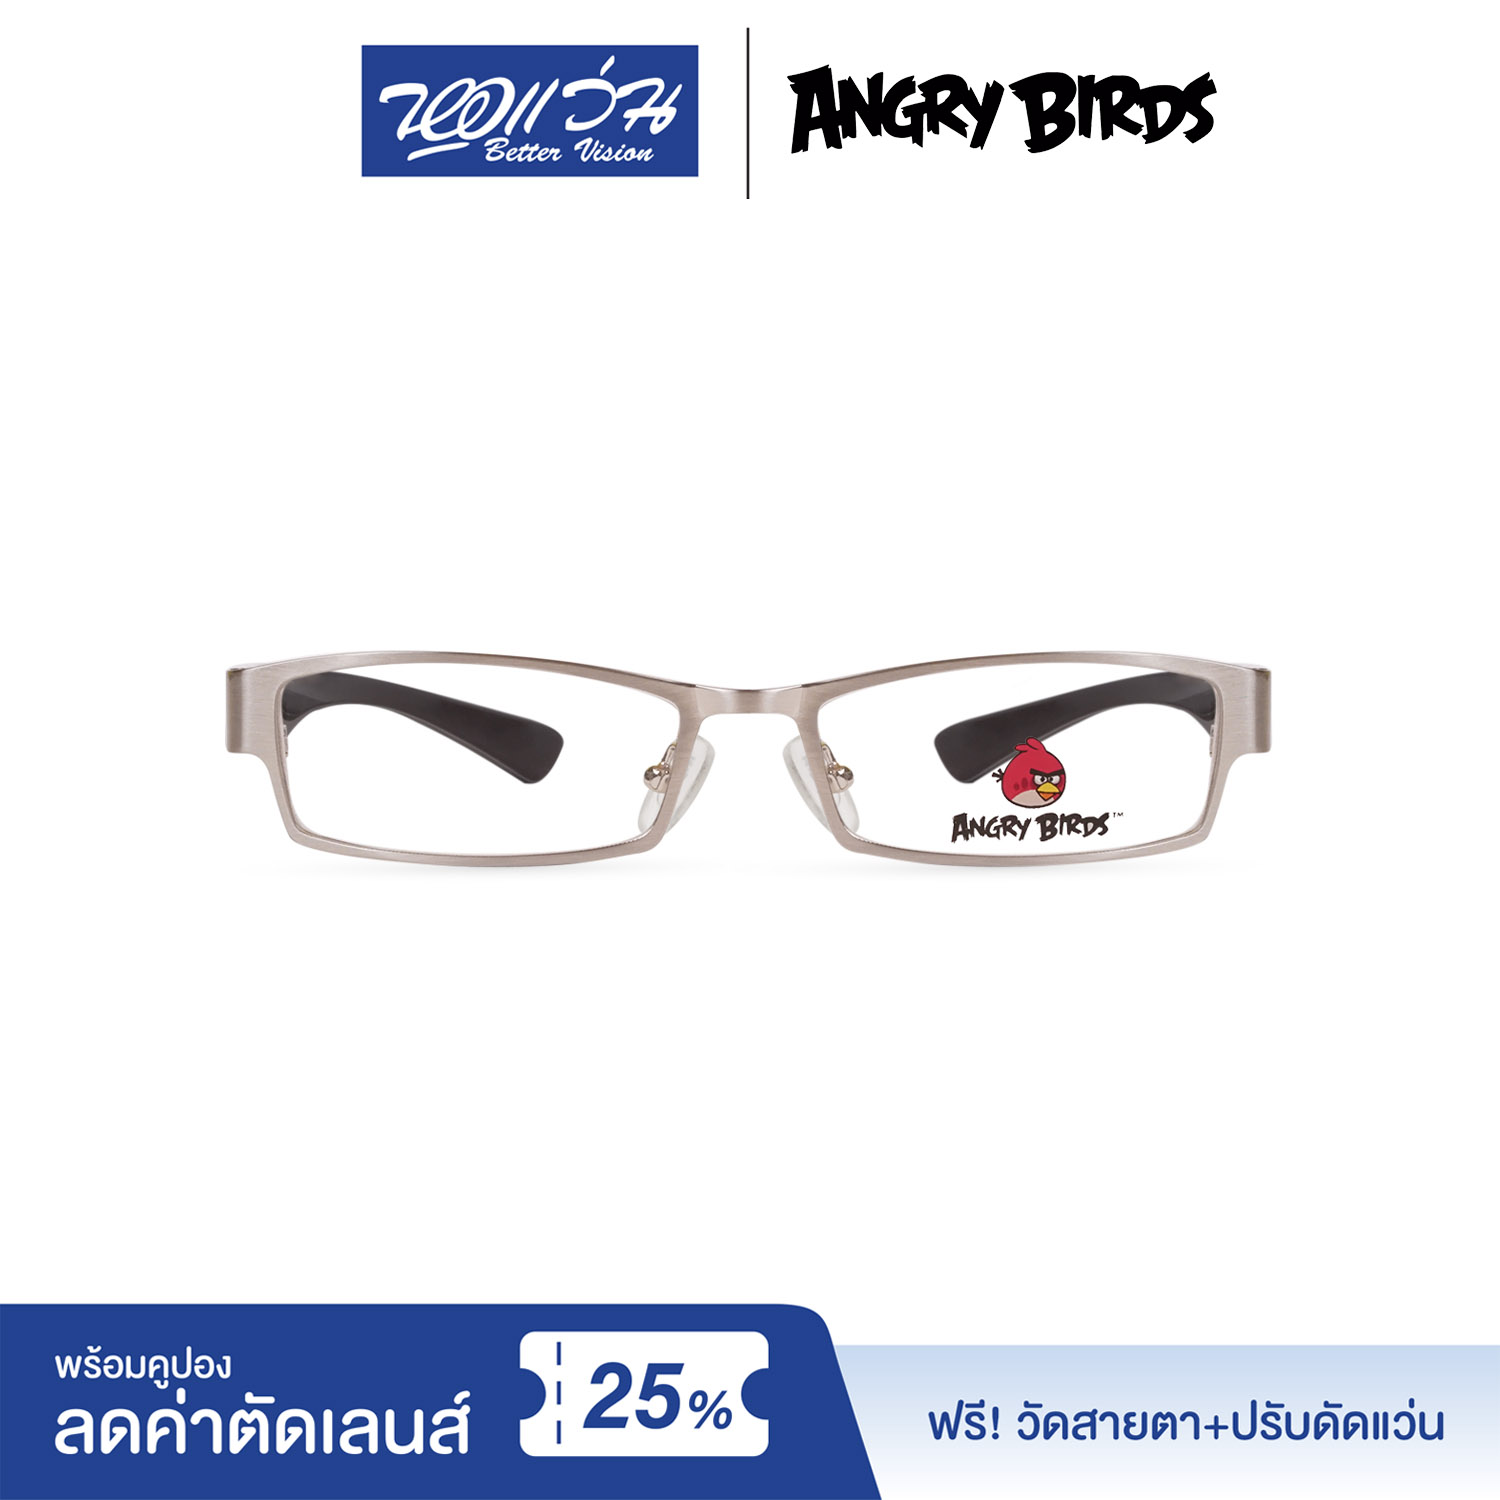 กรอบแว่นตาเด็ก แองกี้ เบิร์ด ANGRY BIRDS Child glasses แถมฟรีส่วนลดค่าตัดเลนส์ 25%  free 25% lens discount รุ่น FAG32204